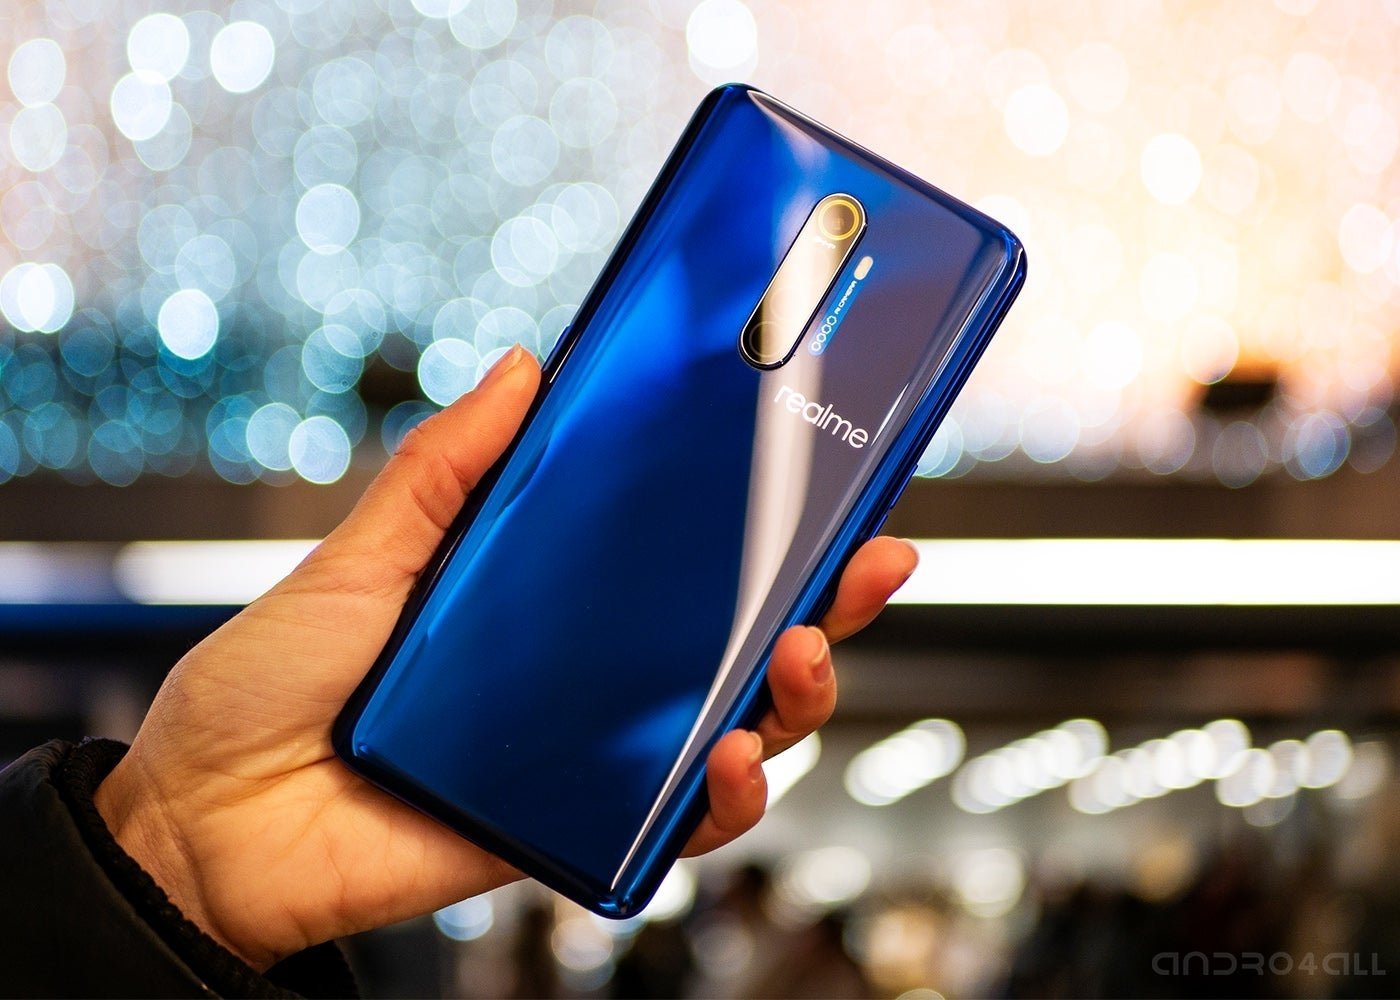 Realme X2 Pro in blue color